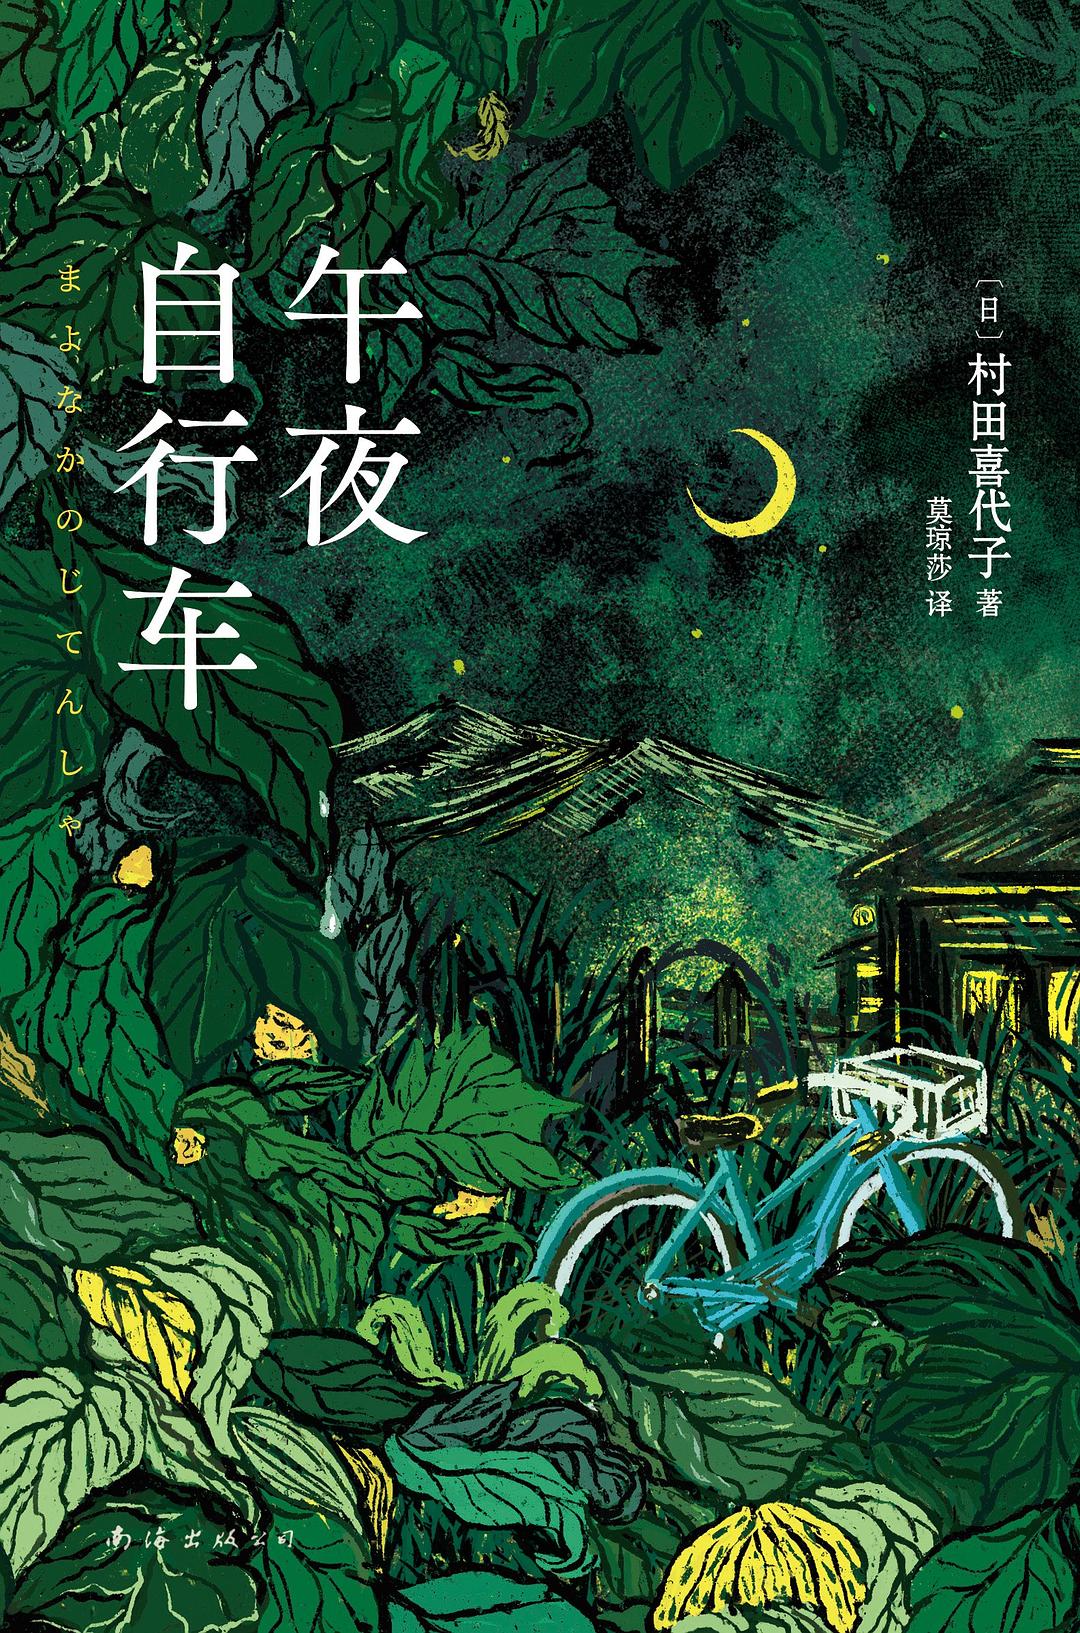 《午夜自行车》村田喜代子大书屋